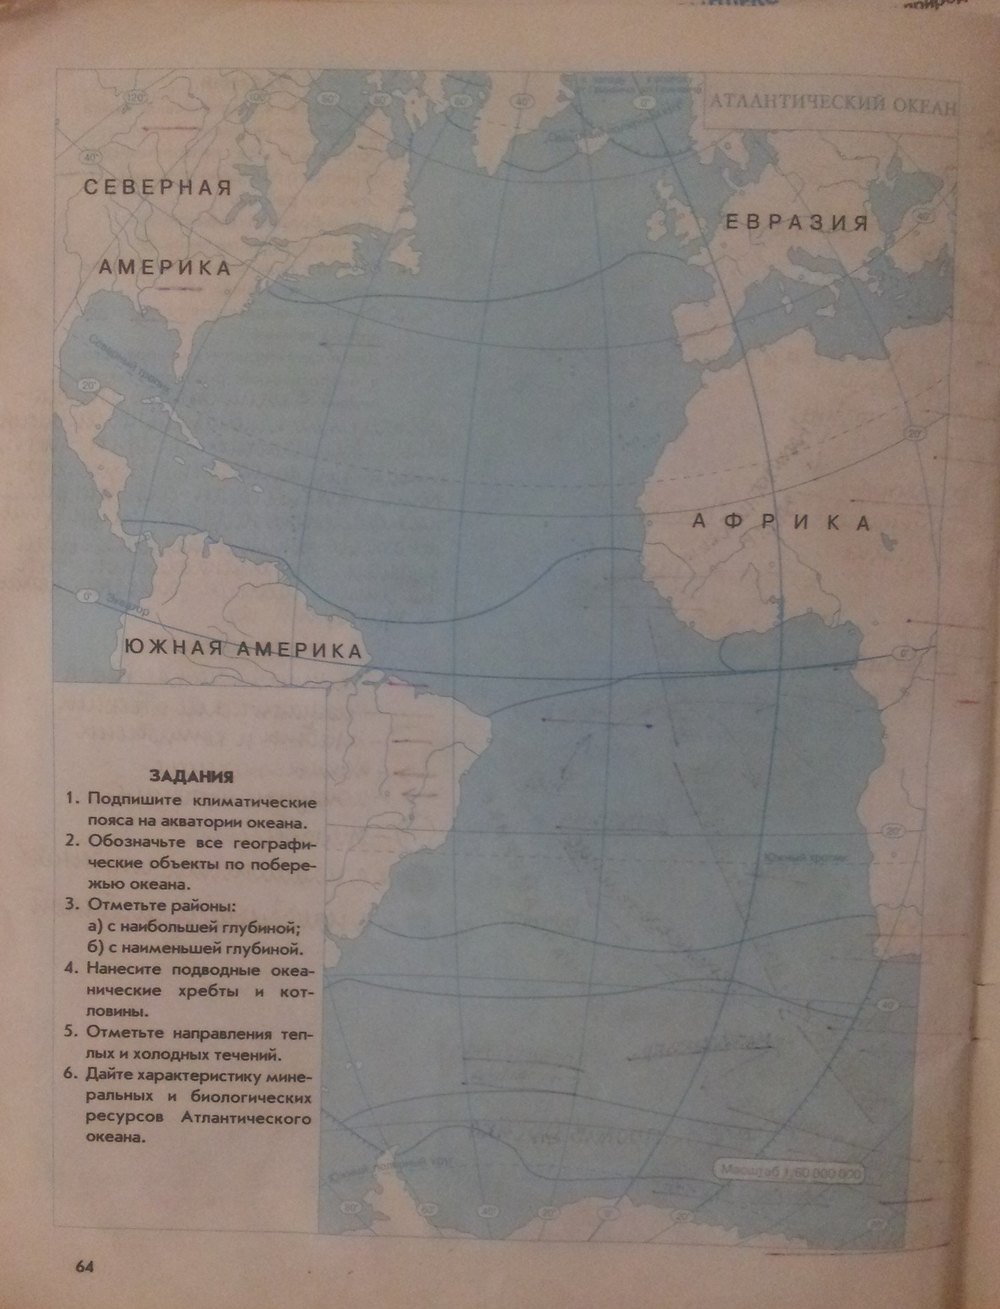 География 7 класс стр 87. Атлантический океан контурная карта 7 класс. Климатические пояса на акватории океана. Контурная карта Атлантического океана. Подпишите названия климатических поясов на акватории океана.